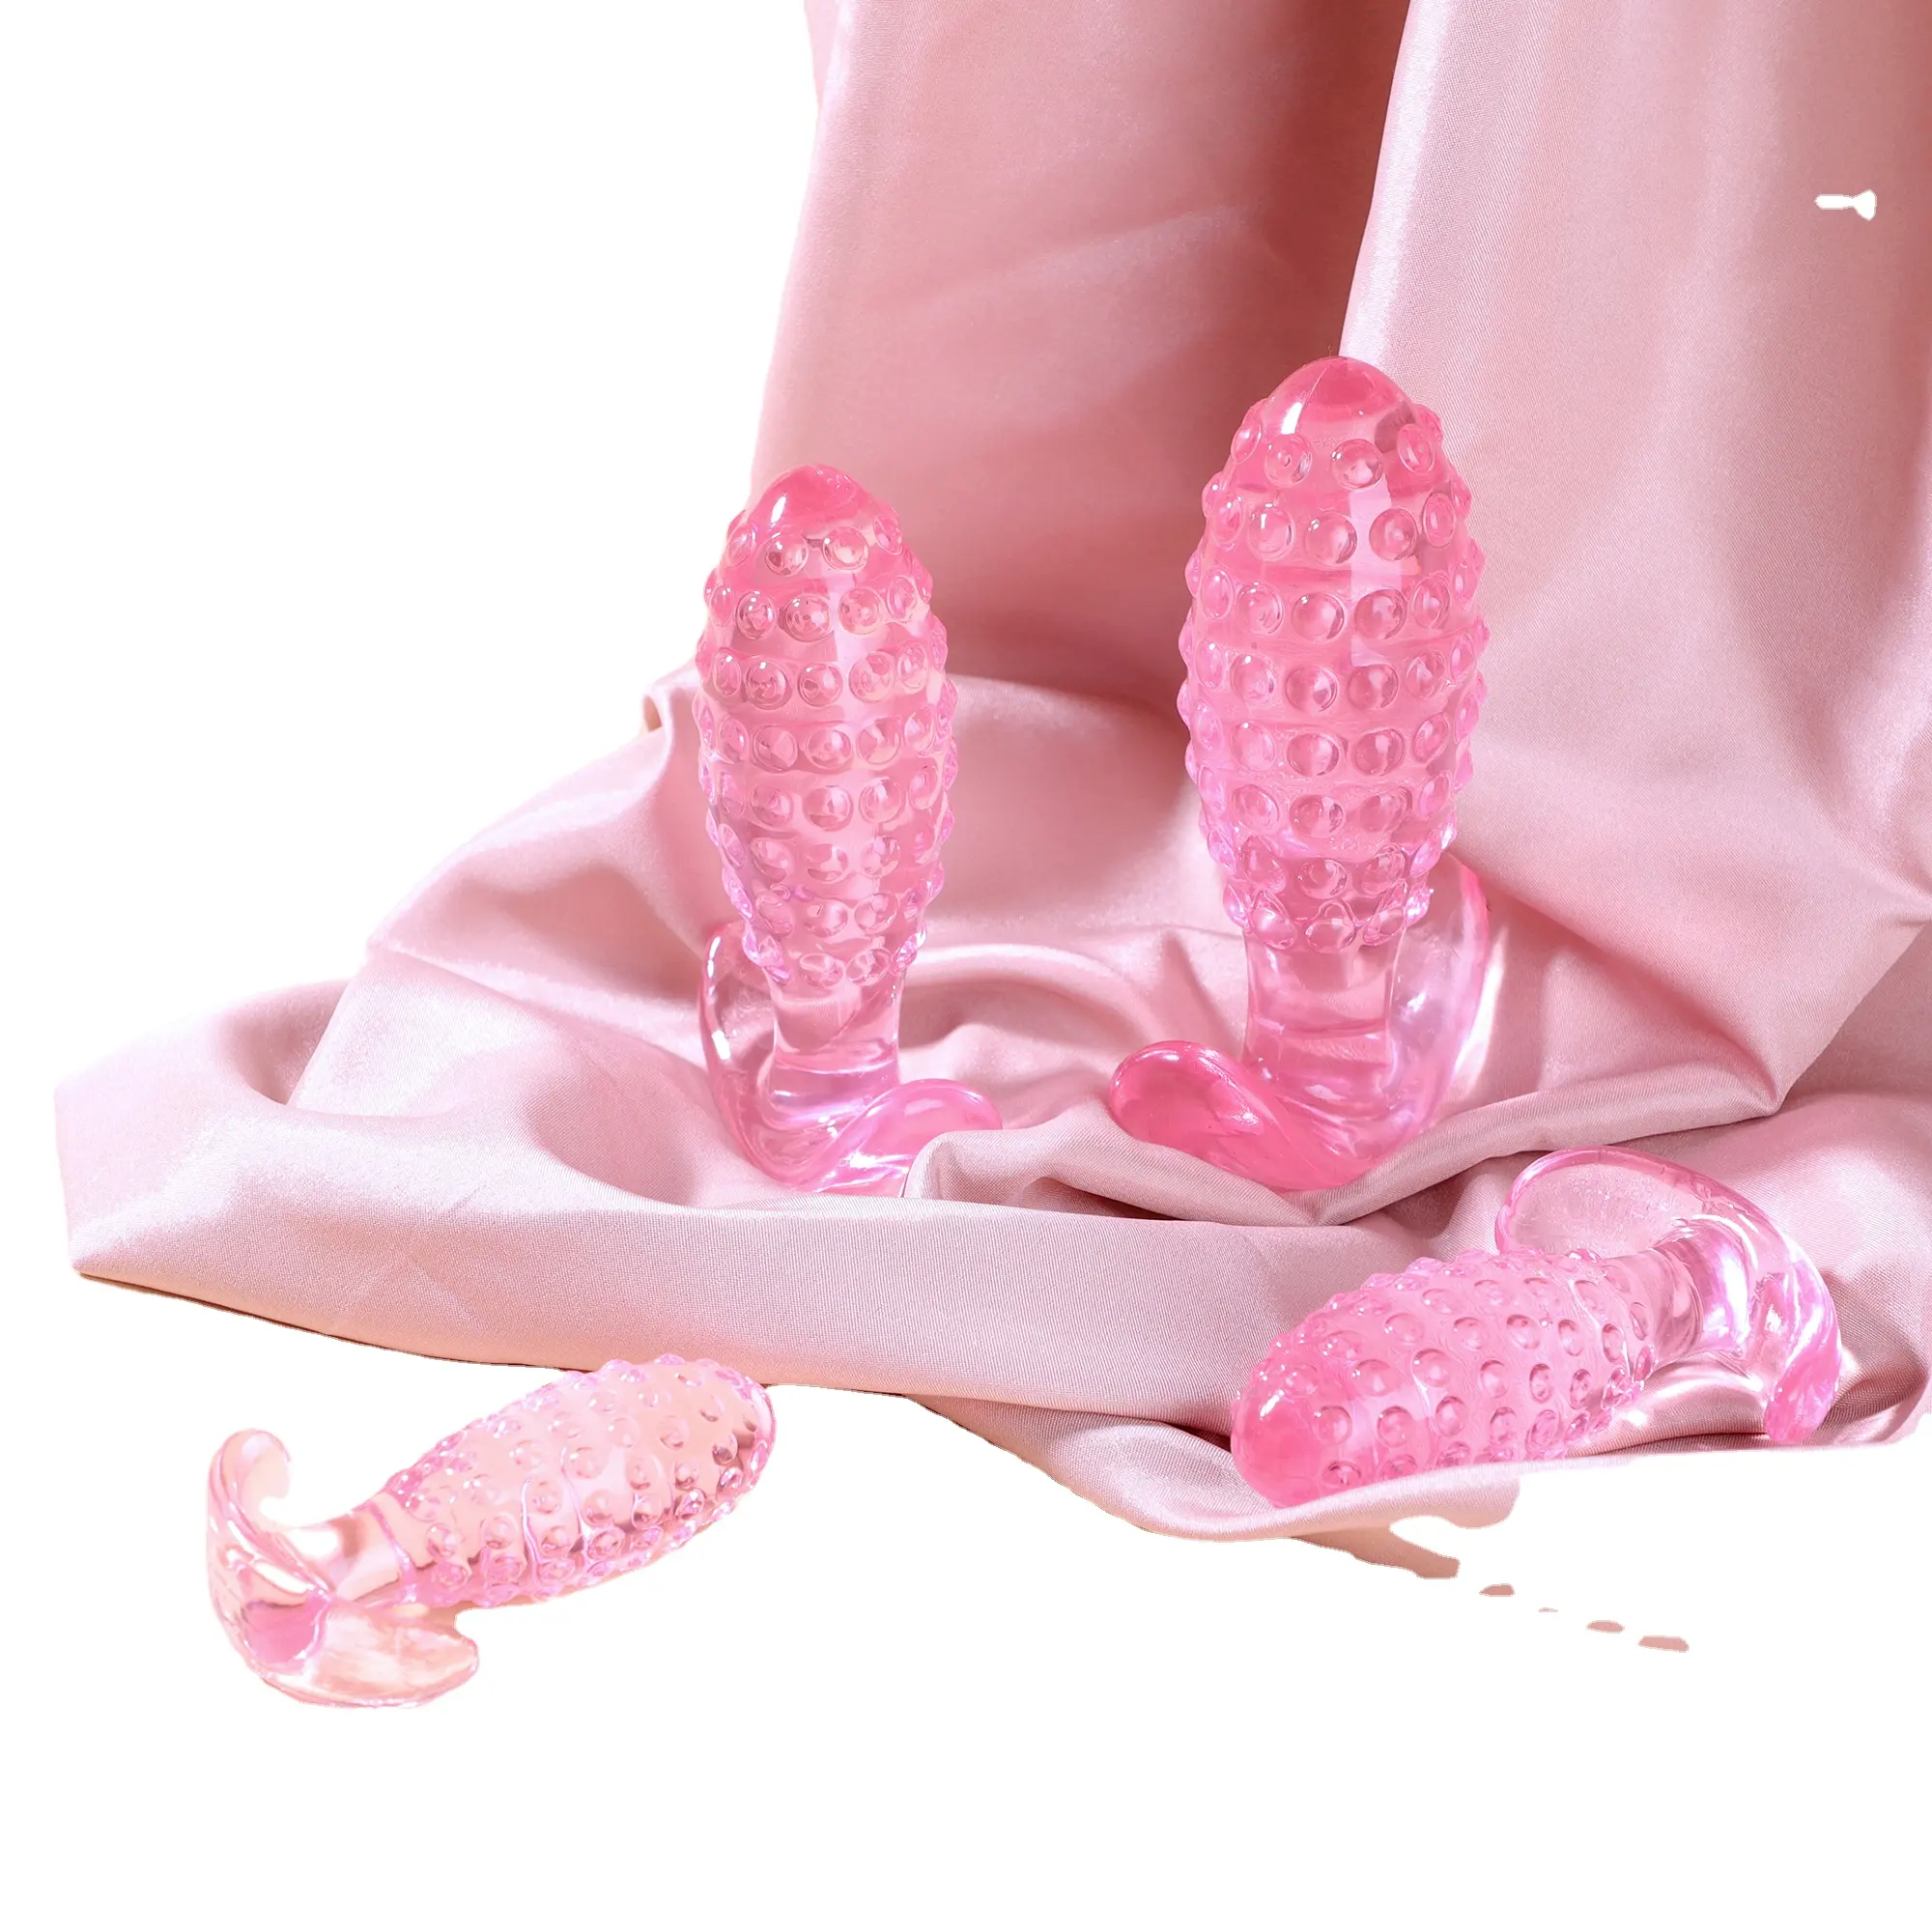 Nouveau ananas couleur transparente petit plug anal arrière tirer perle jouets sexuels pour les femmes